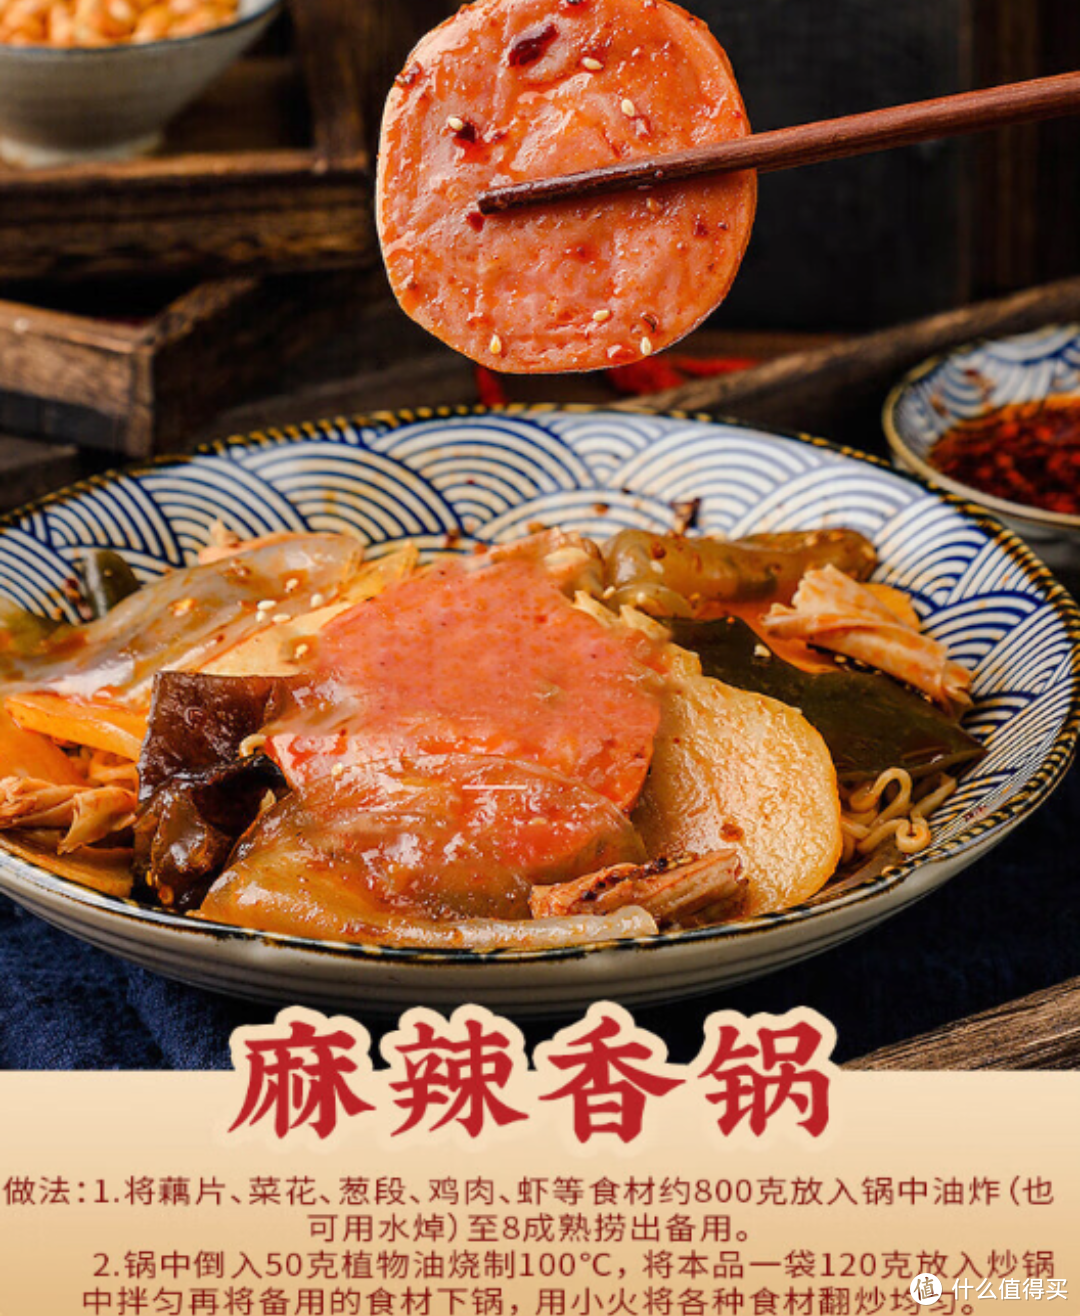 中华老字号 桥头 重庆老火锅底料：手工牛油调味料，勾起你的味蕾狂欢！